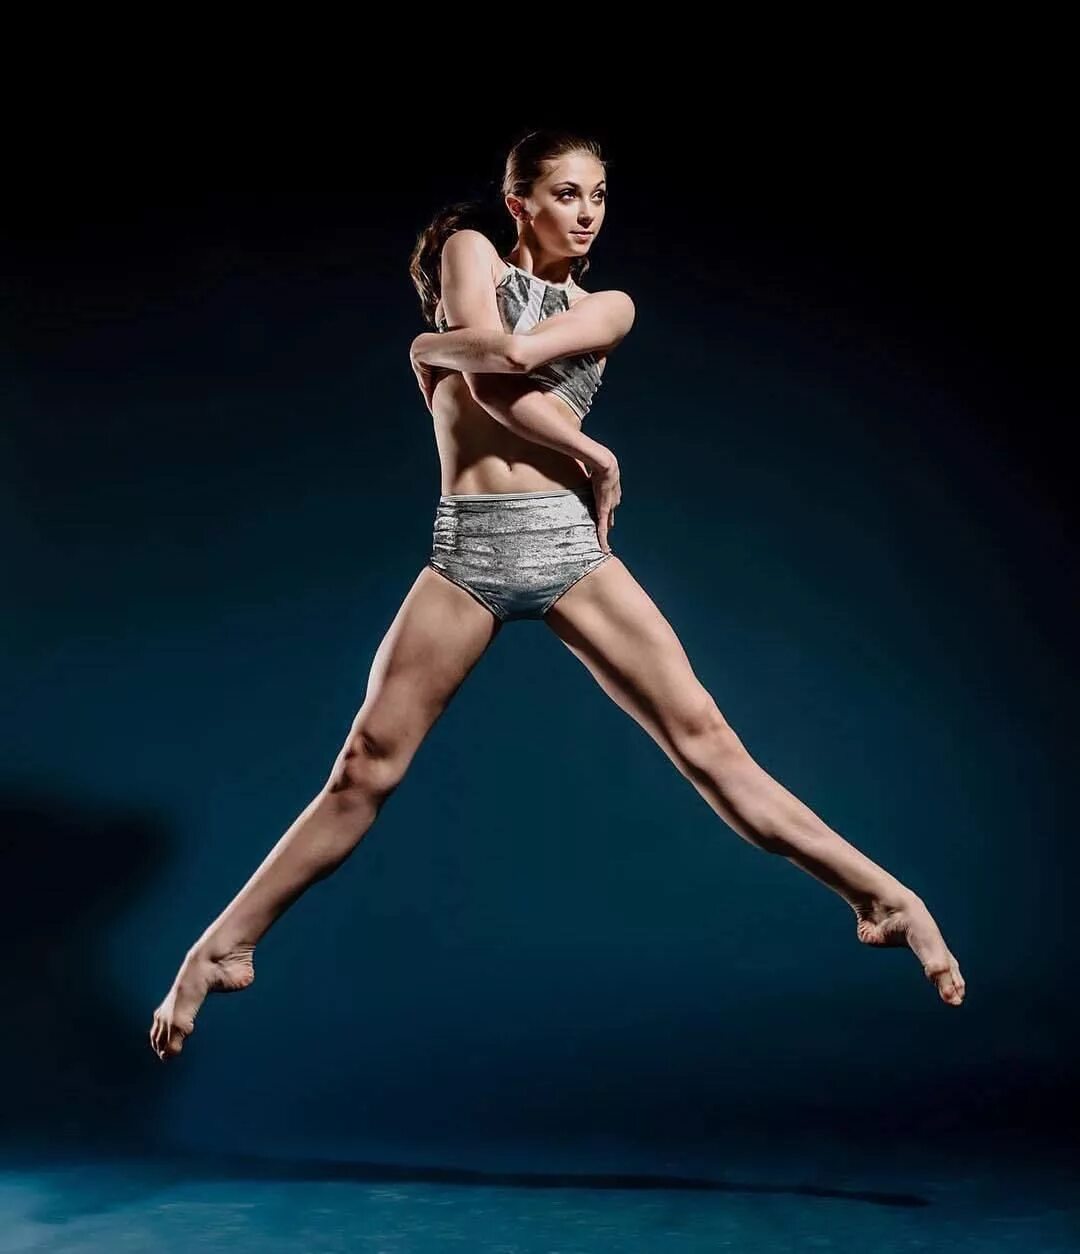 Названный позировавший. Tia Wenkman. Балерина в прыжке. Фигура "балерина". Балеhybyf d GHS;RT.